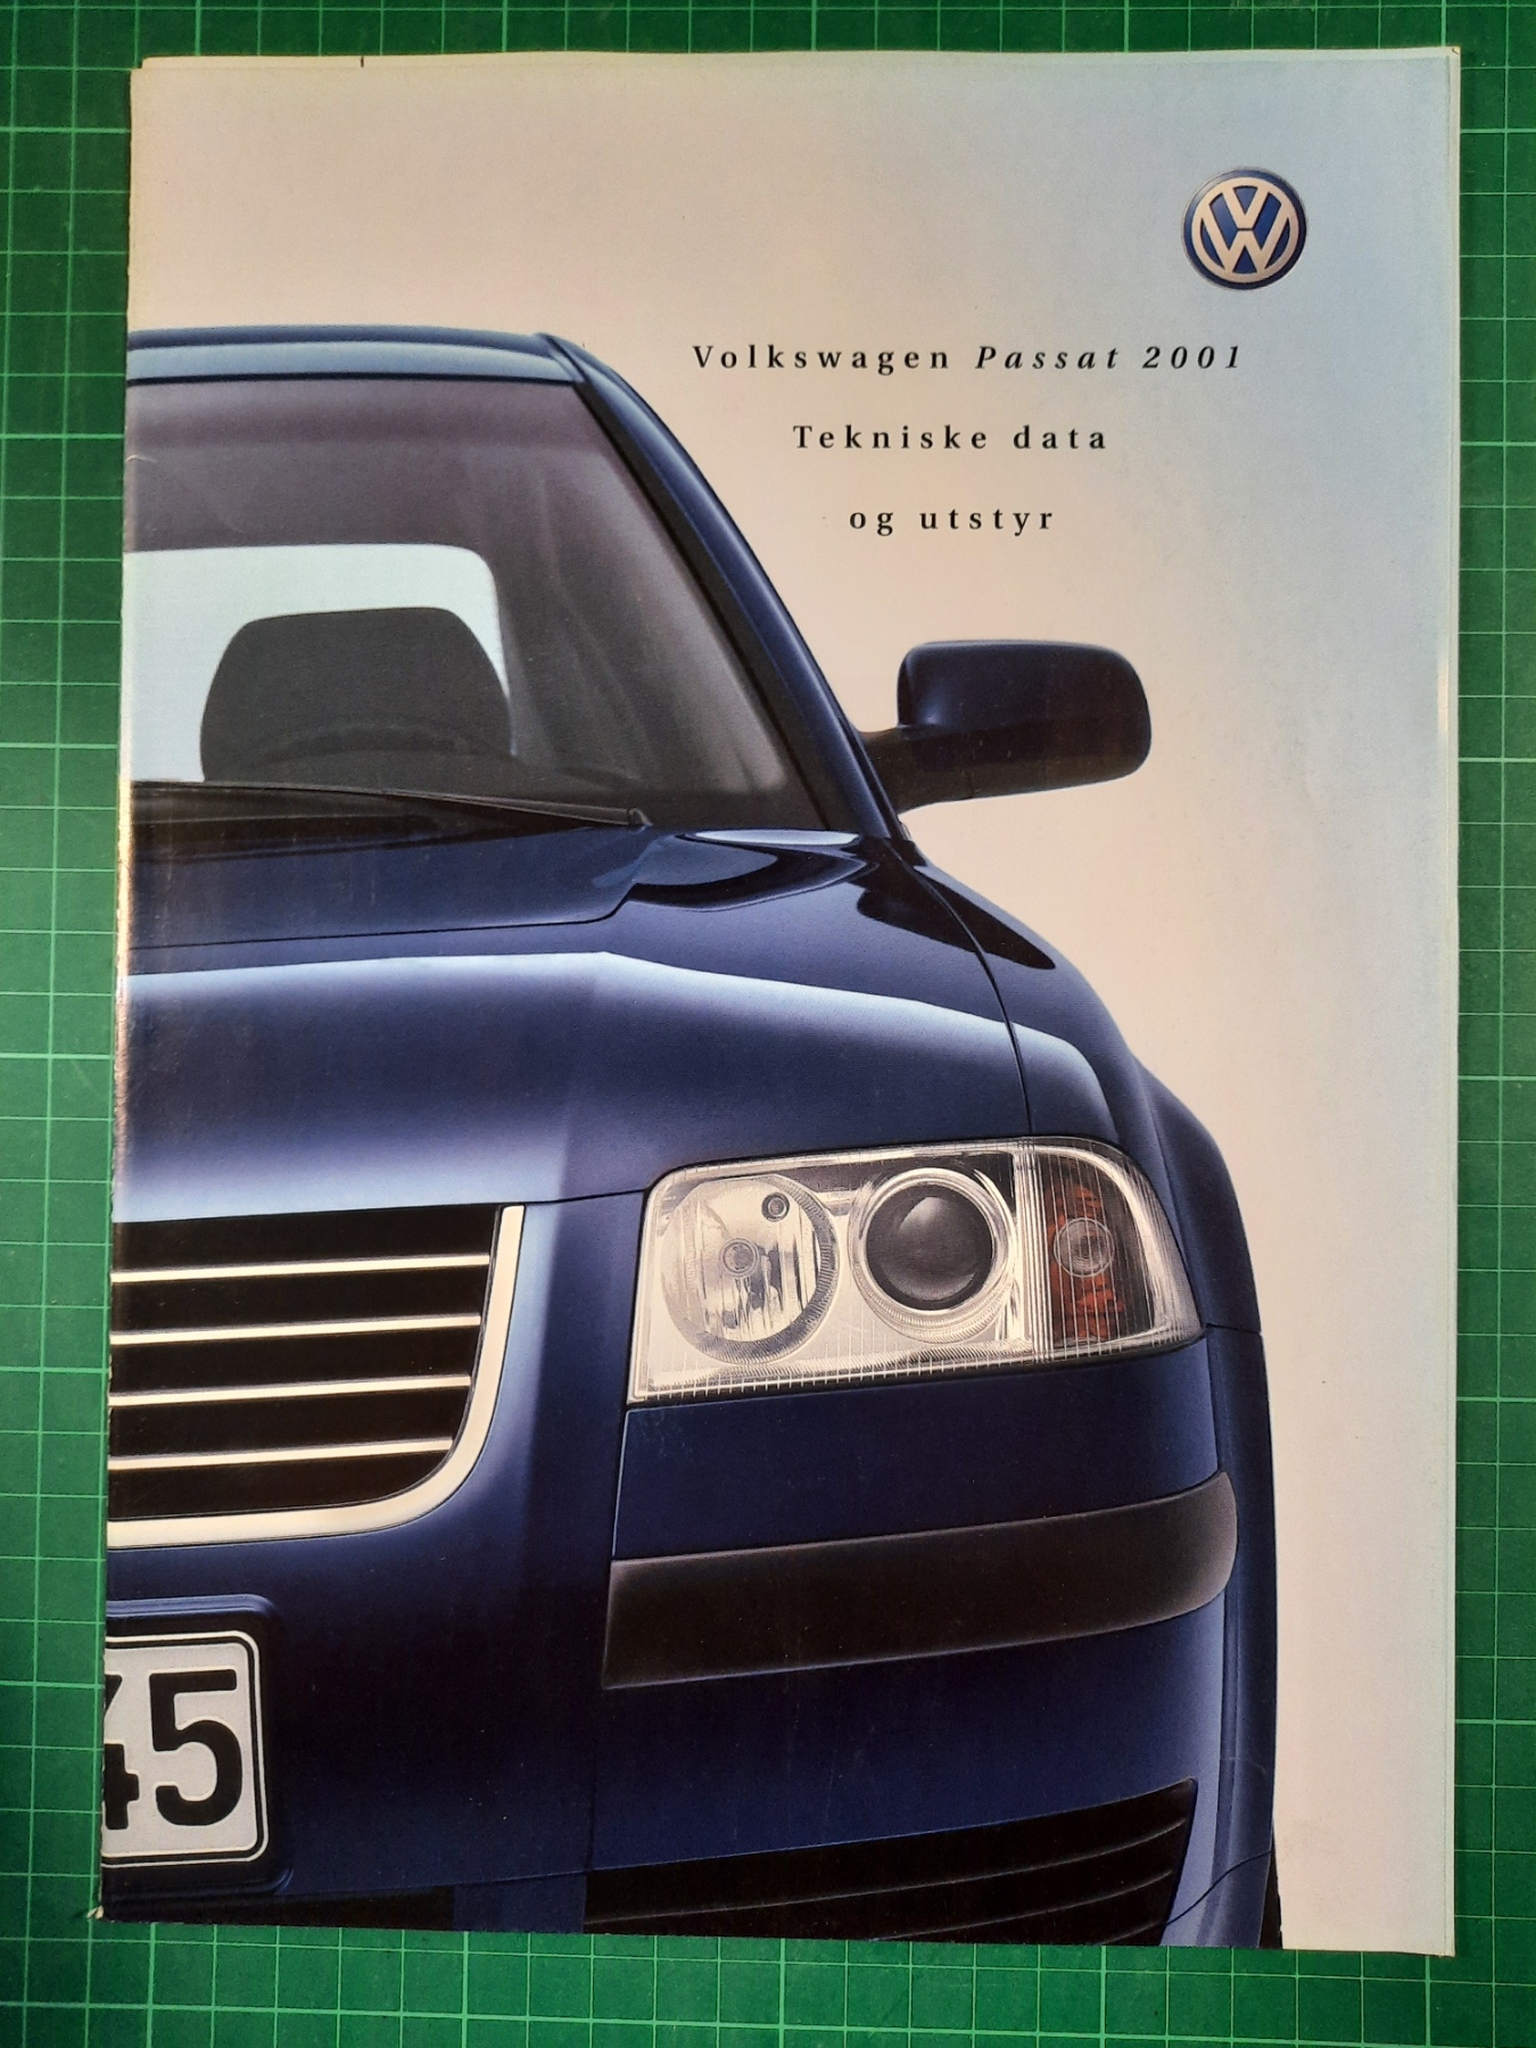 VW Passat Teknisk data 2001